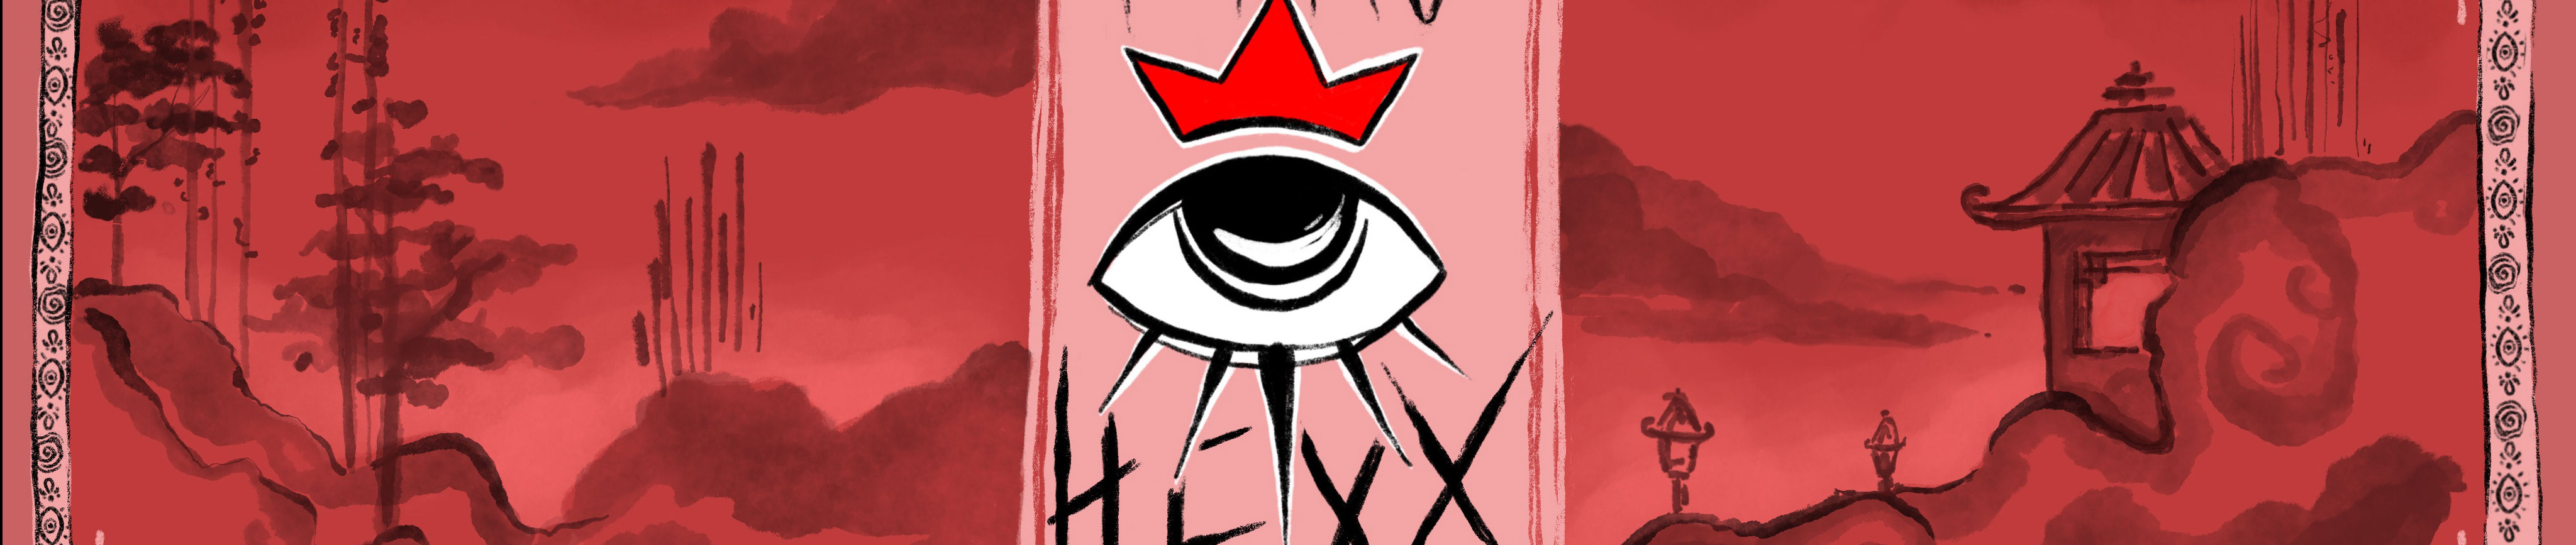 Pyro Hexx's profile banner